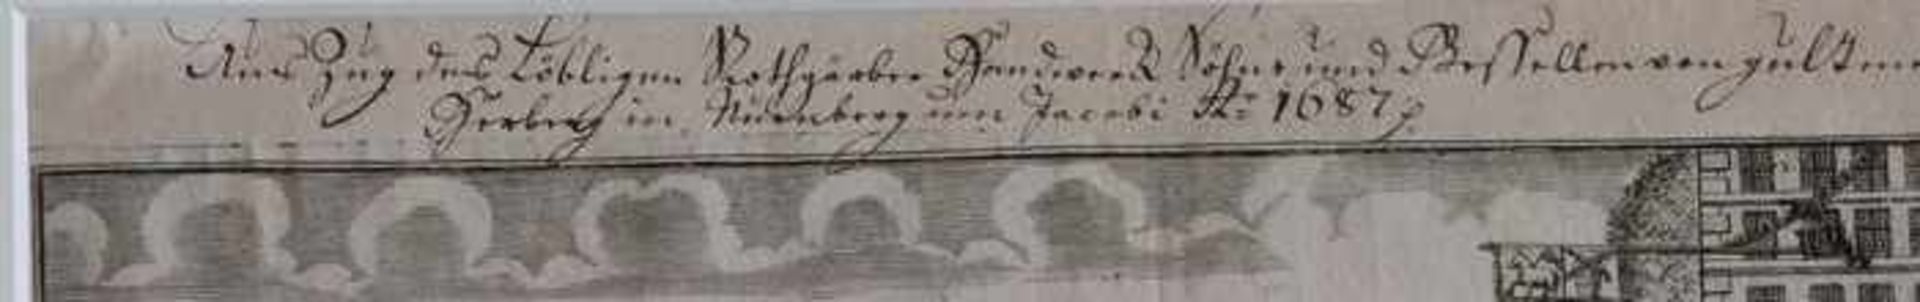 Hirschmann, ThomasE.17.Jh. Nürnberg, zugeschr., handschriftlich bez. "Auszug des Löbigen - Bild 2 aus 2